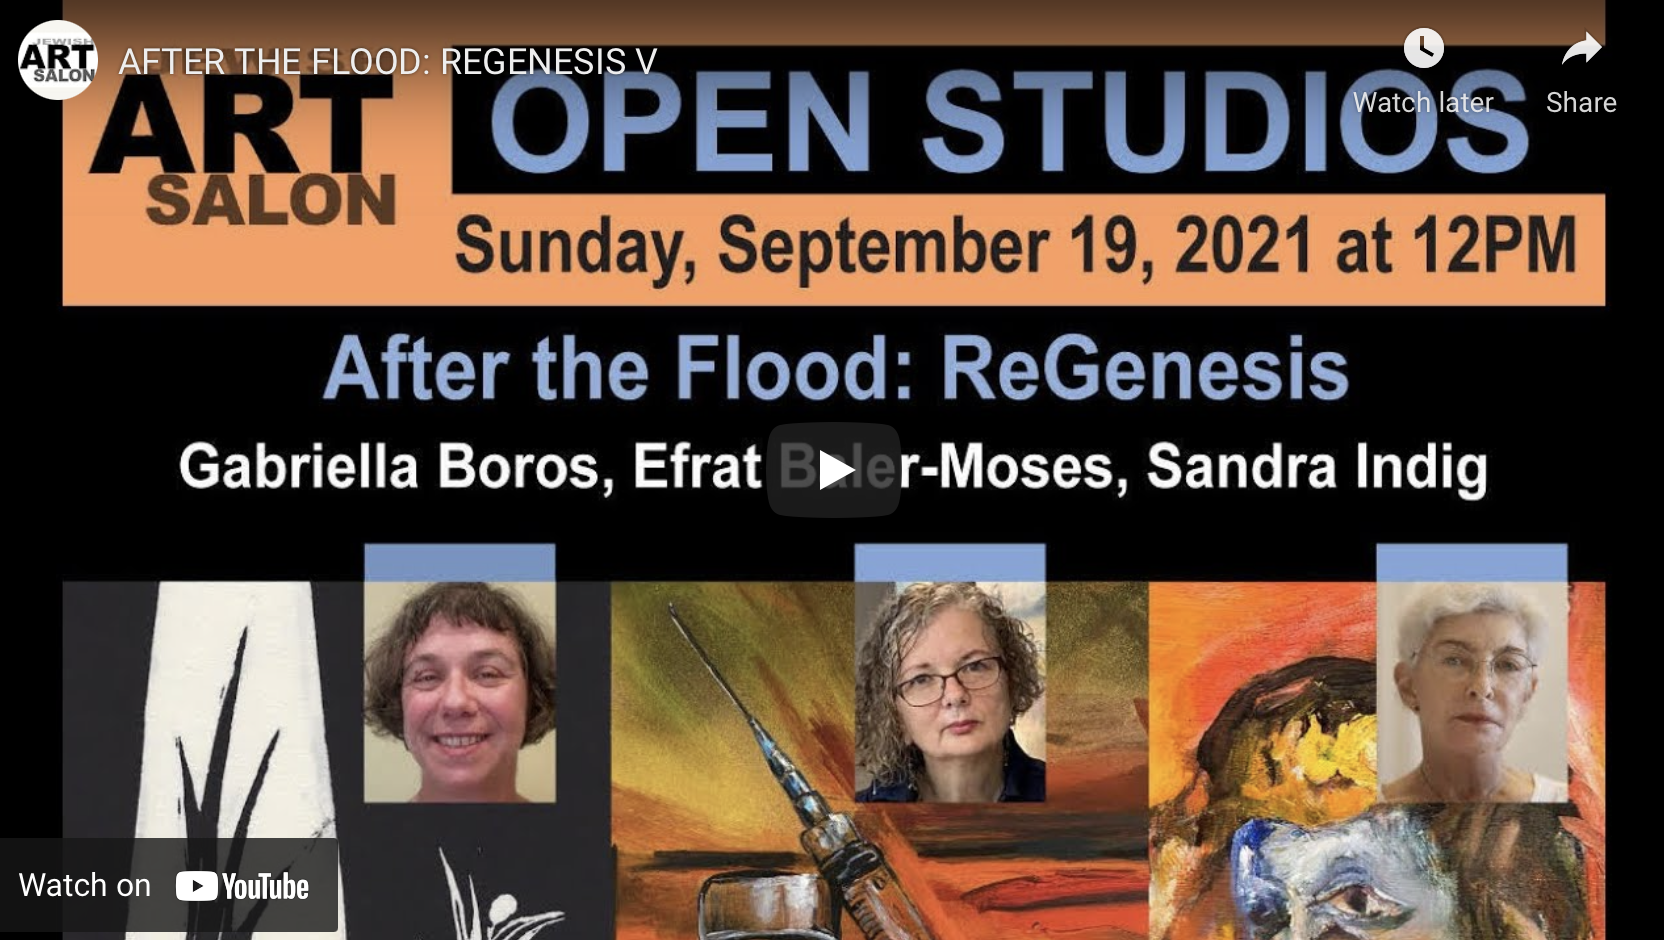 VIDEO: After the Flood – ReGenesis V